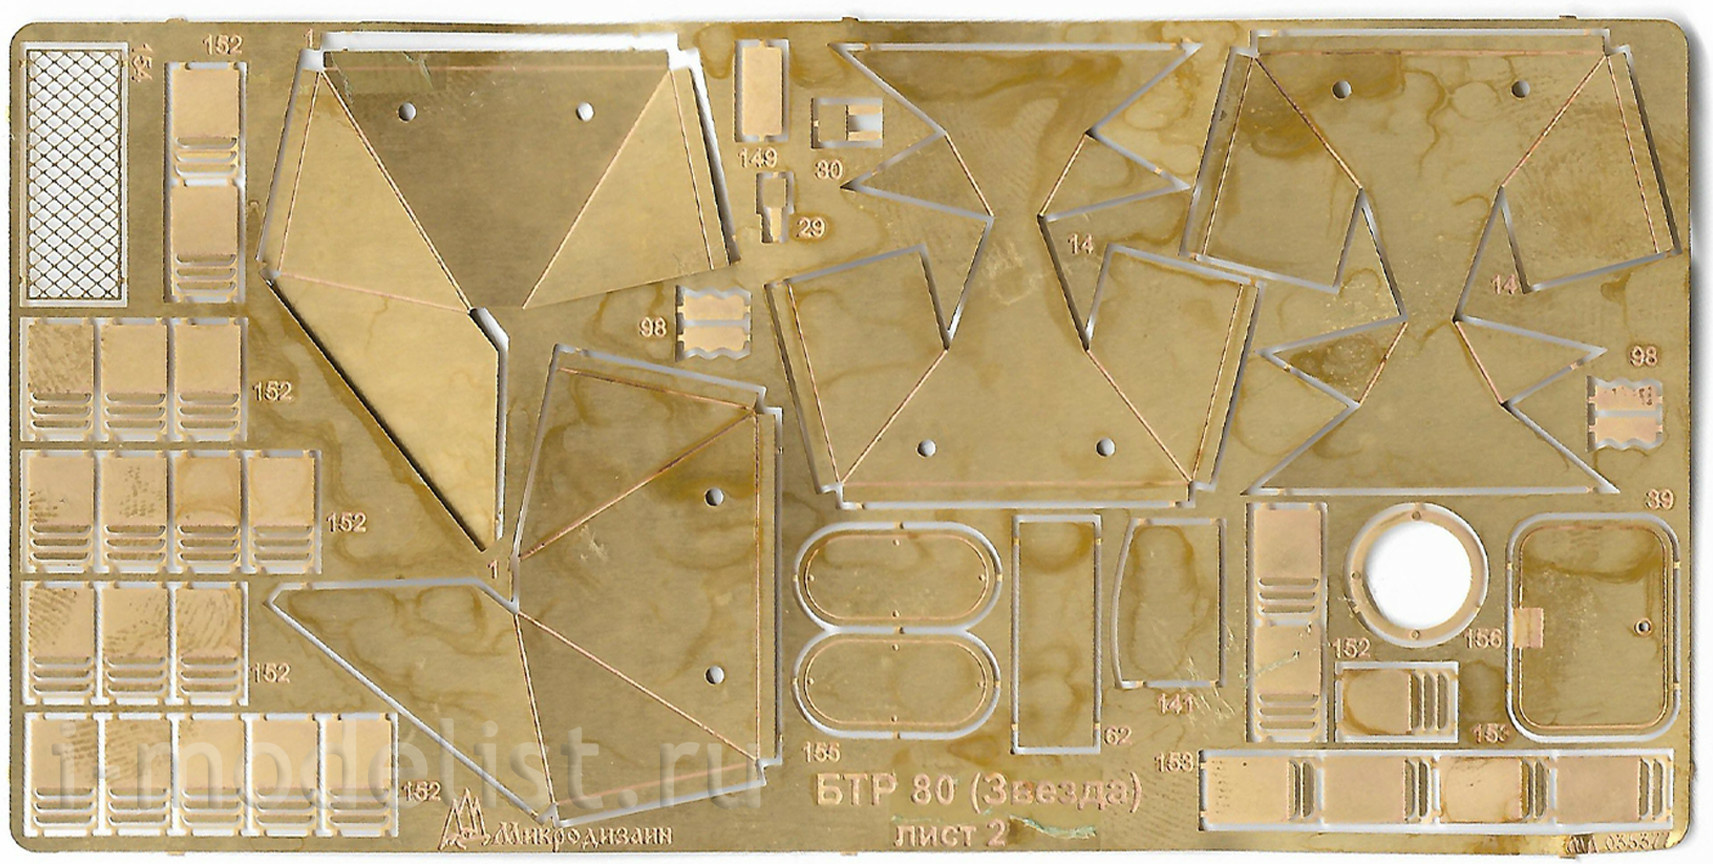 035377 Микродизайн 1/35 Набор фототравления на БТР-80 от Звезды.